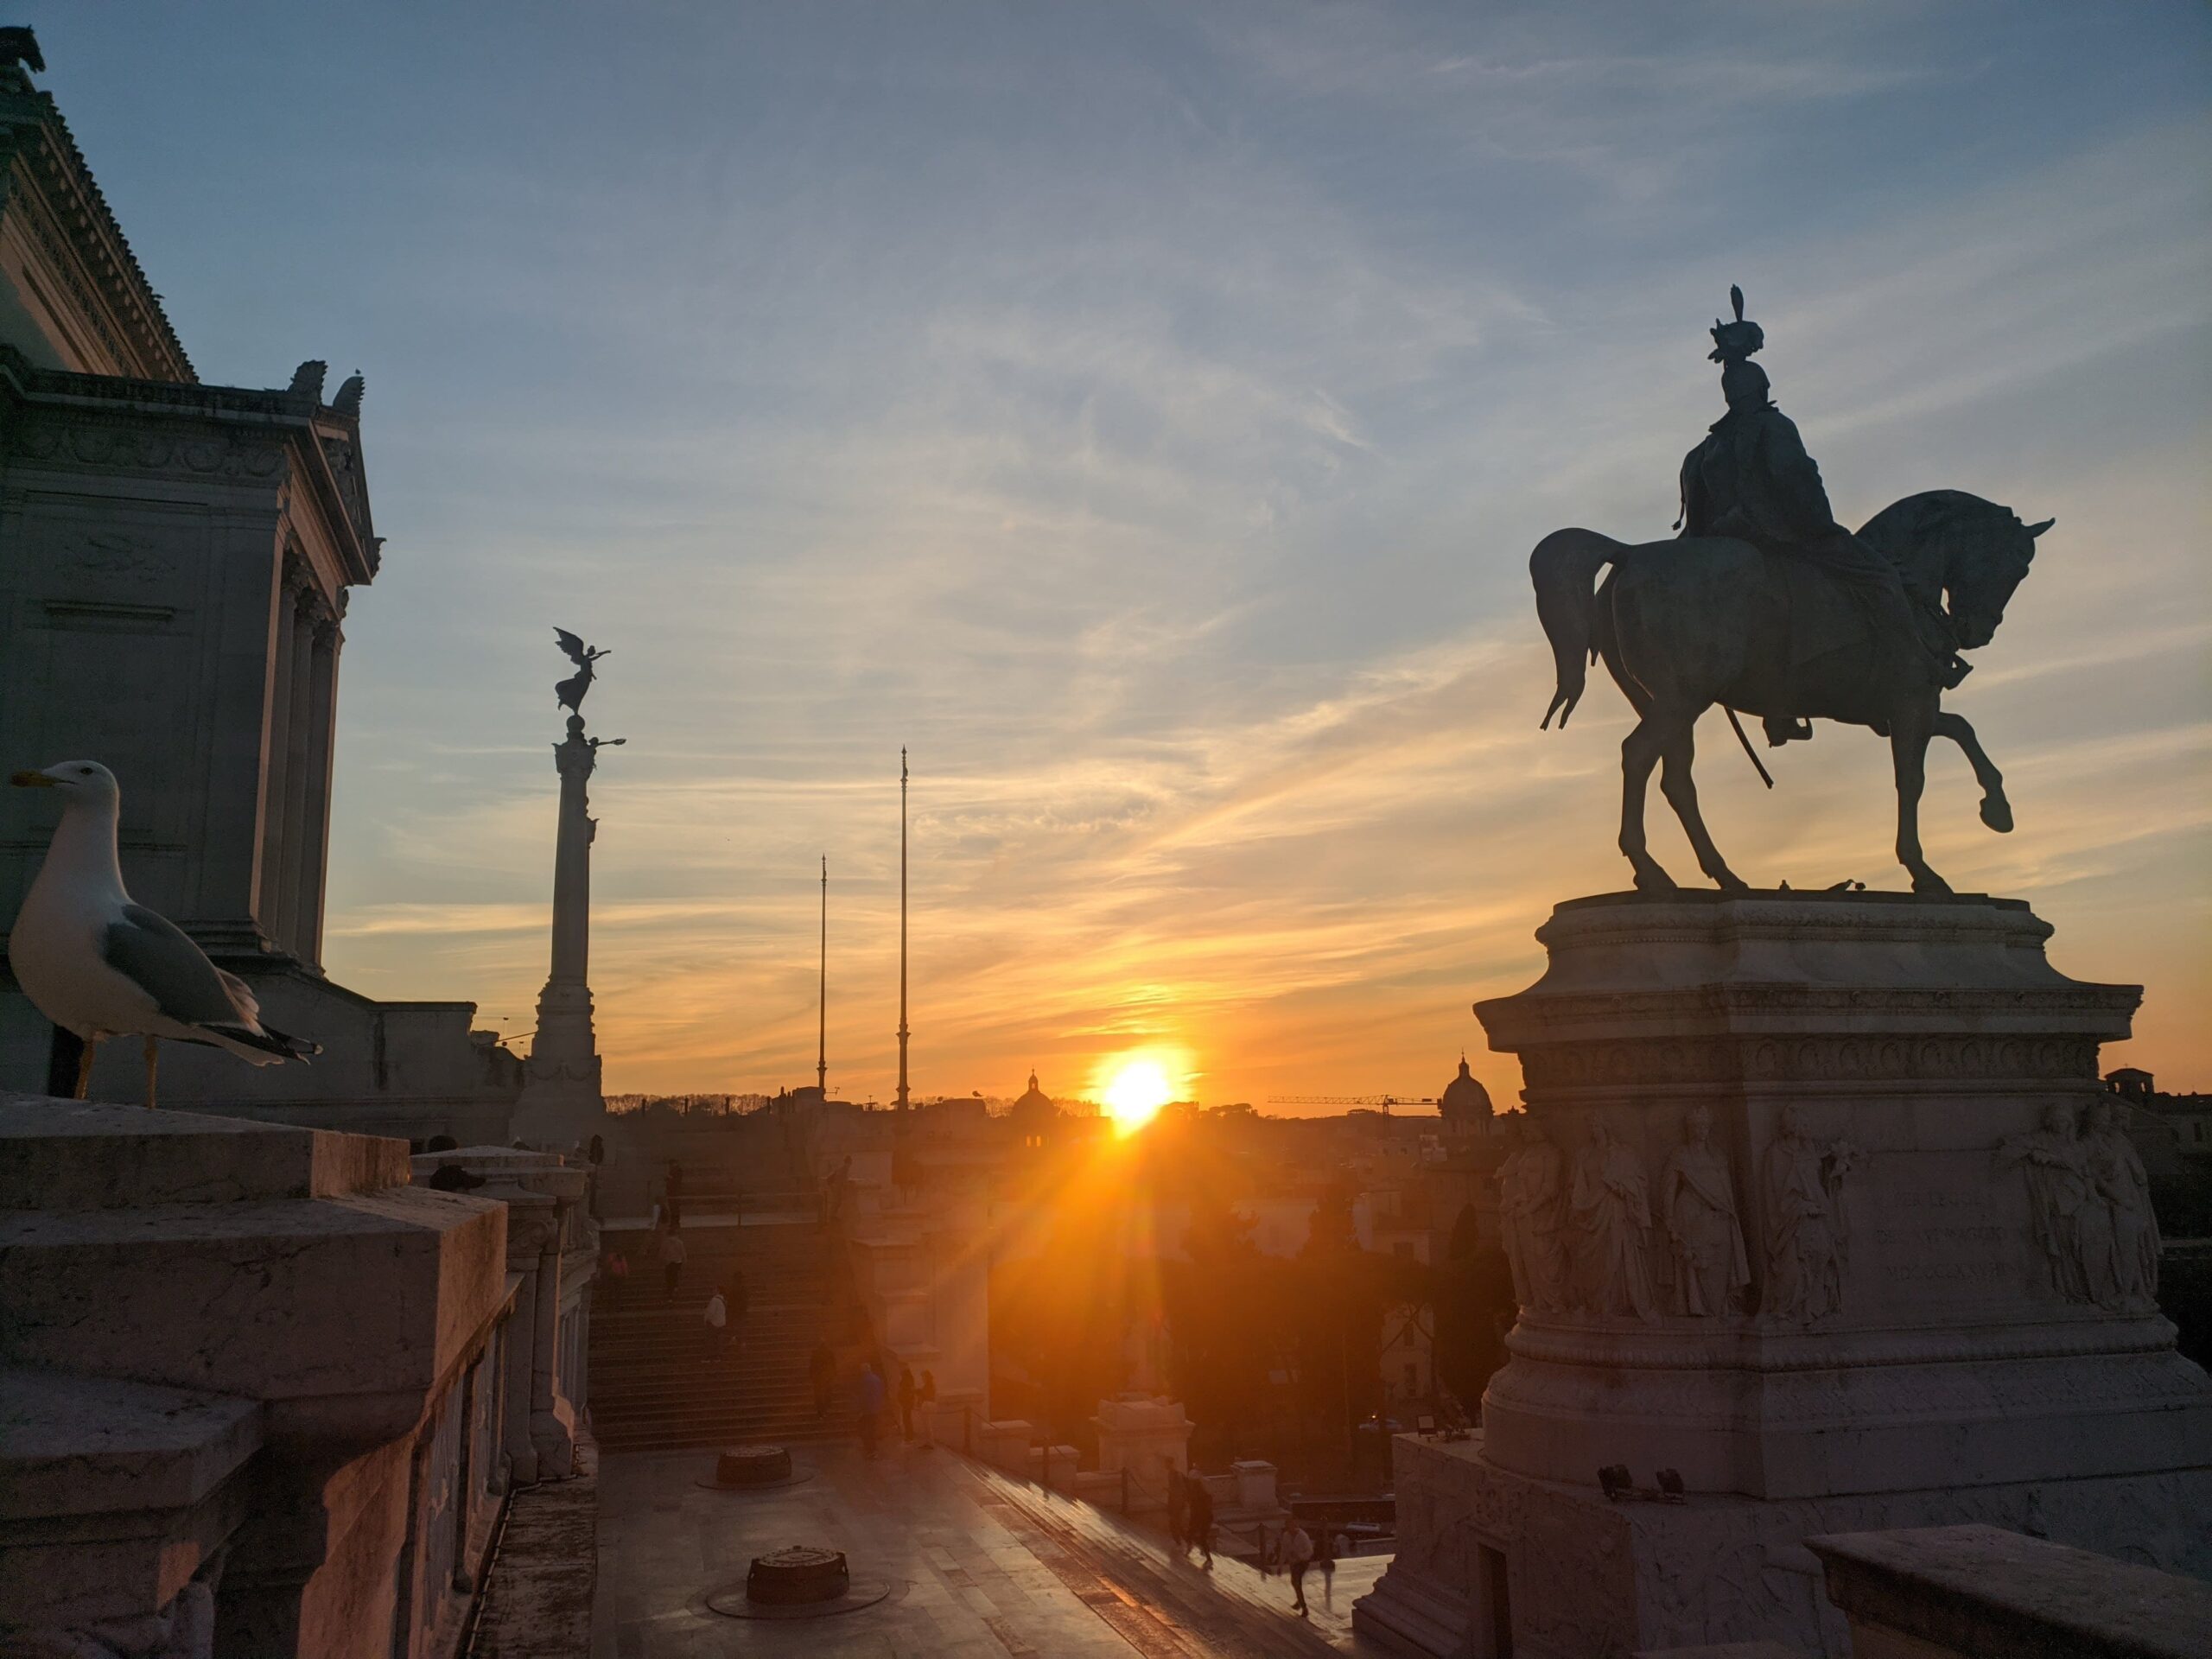 A imagem apresenta uma composição artística de Roma com uma estátua equestre em primeiro plano, um pássaro pousado à esquerda e o sol poente ao fundo, criando linhas de luz e sombra que realçam a atmosfera histórica e a beleza natural da cidade.